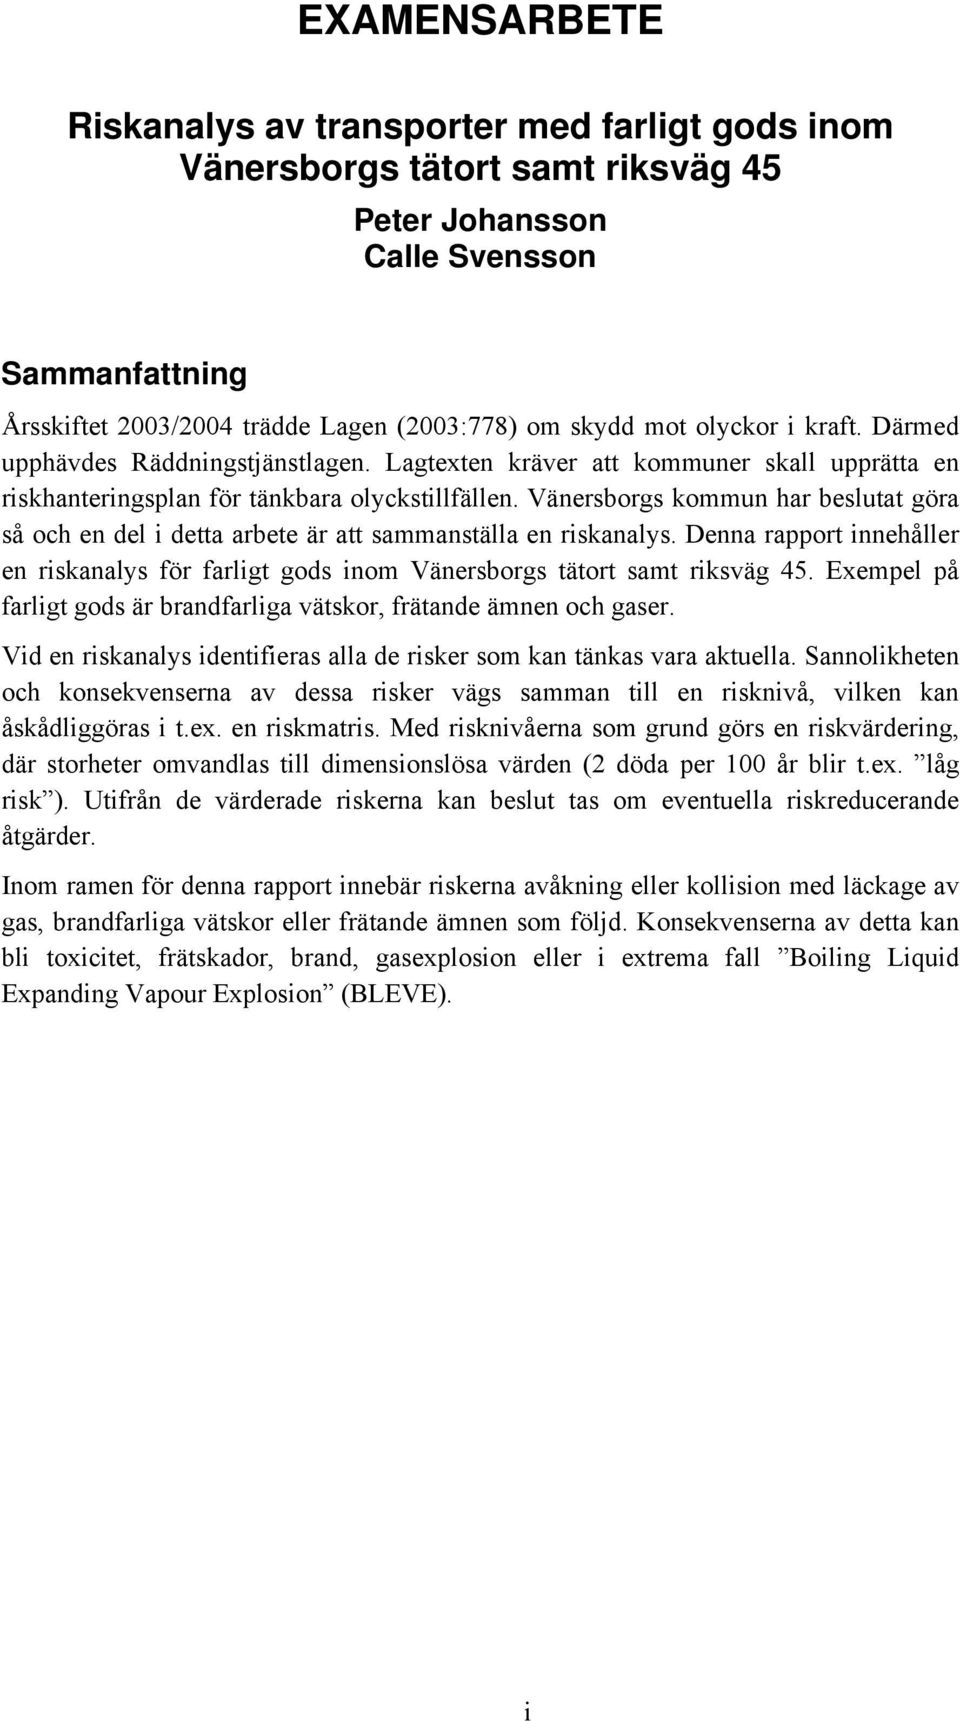 Vänersborgs kommun har beslutat göra så och en del i detta arbete är att sammanställa en riskanalys. Denna rapport innehåller en riskanalys för farligt gods inom Vänersborgs tätort samt riksväg 45.